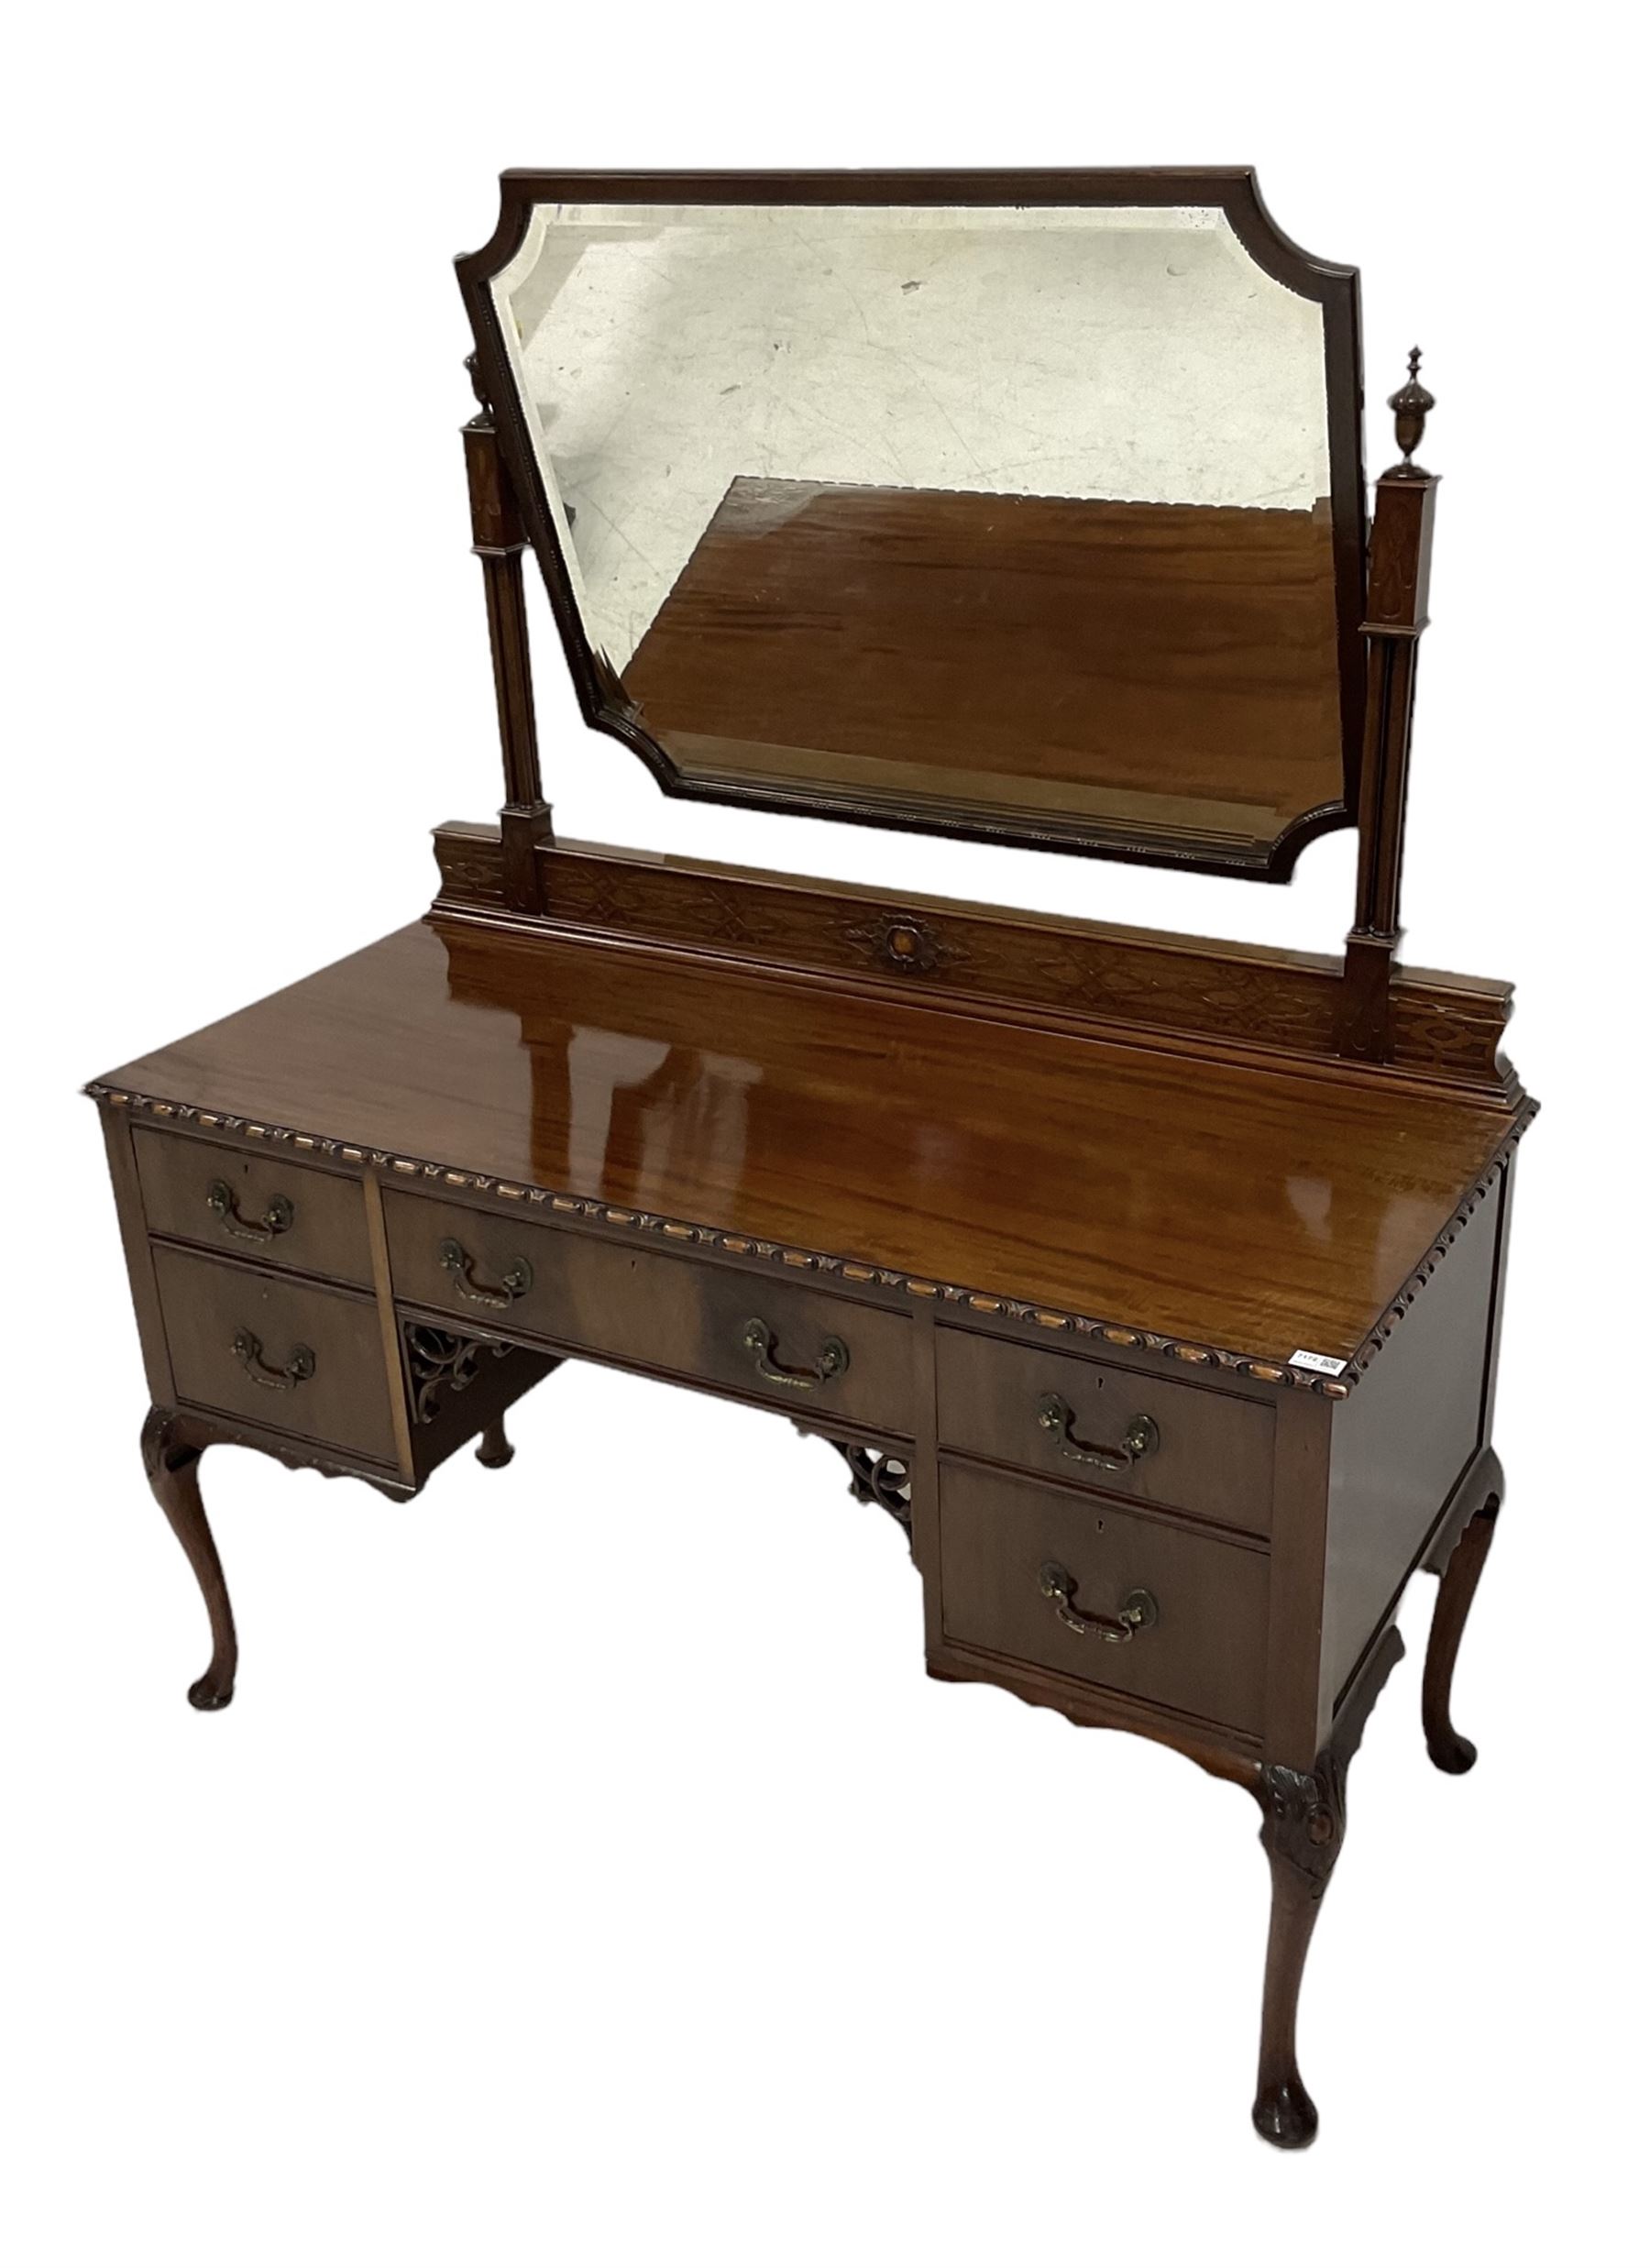 20th century mahogany dressing table